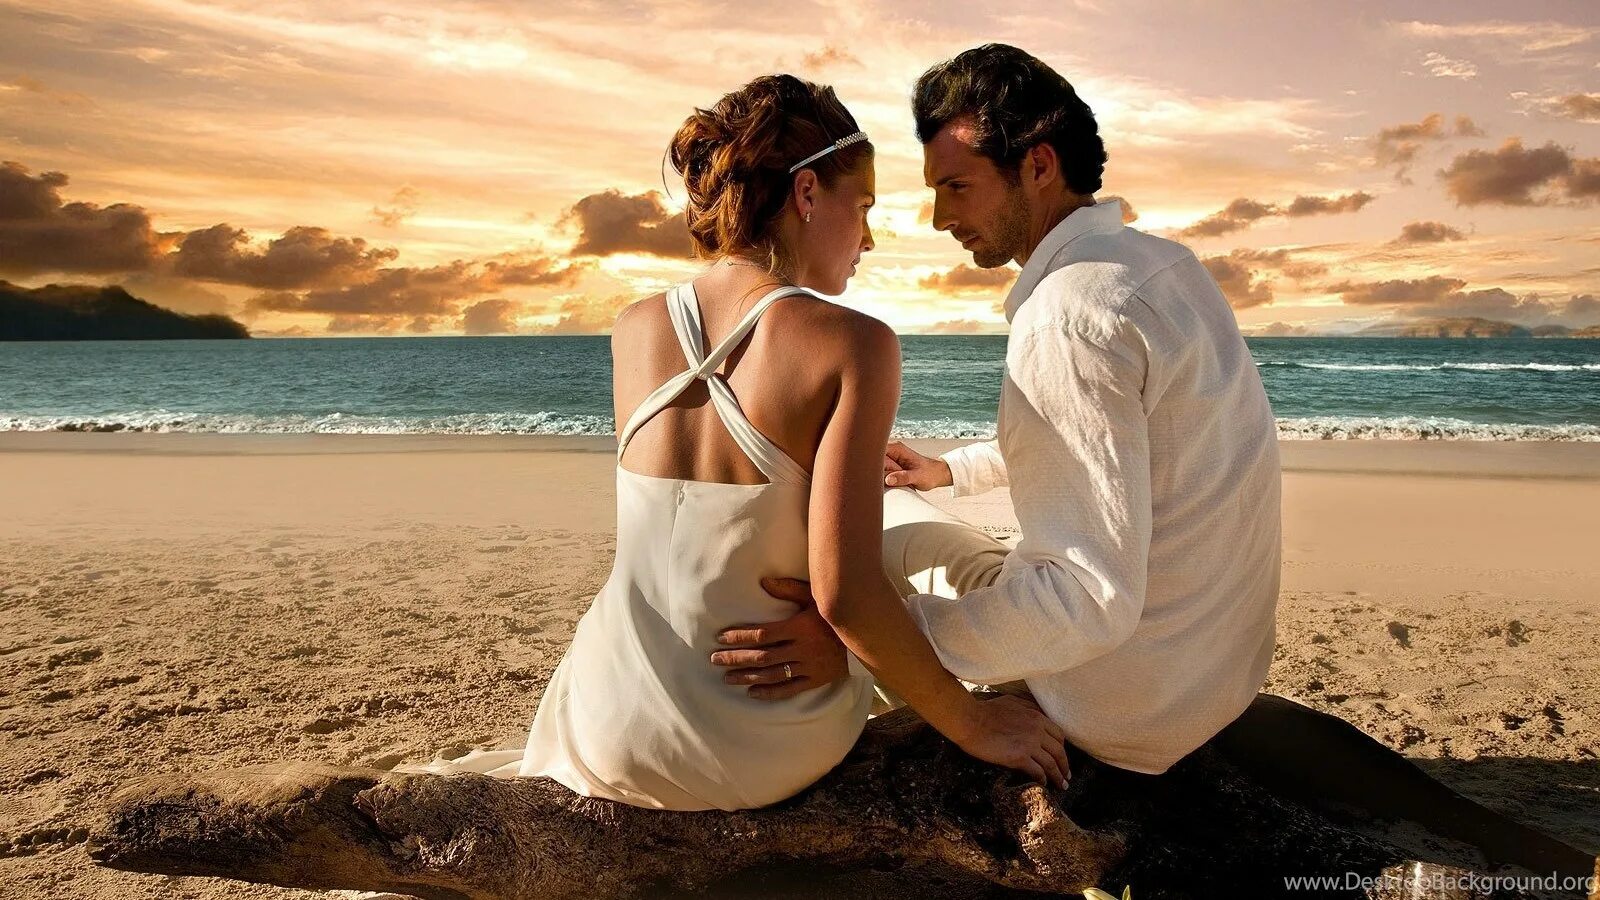 Видео женщины под мужчиной. Счастливые влюбленные. Влюбленные на берегу моря. Парочка на берегу моря. Мужчина и женщина.